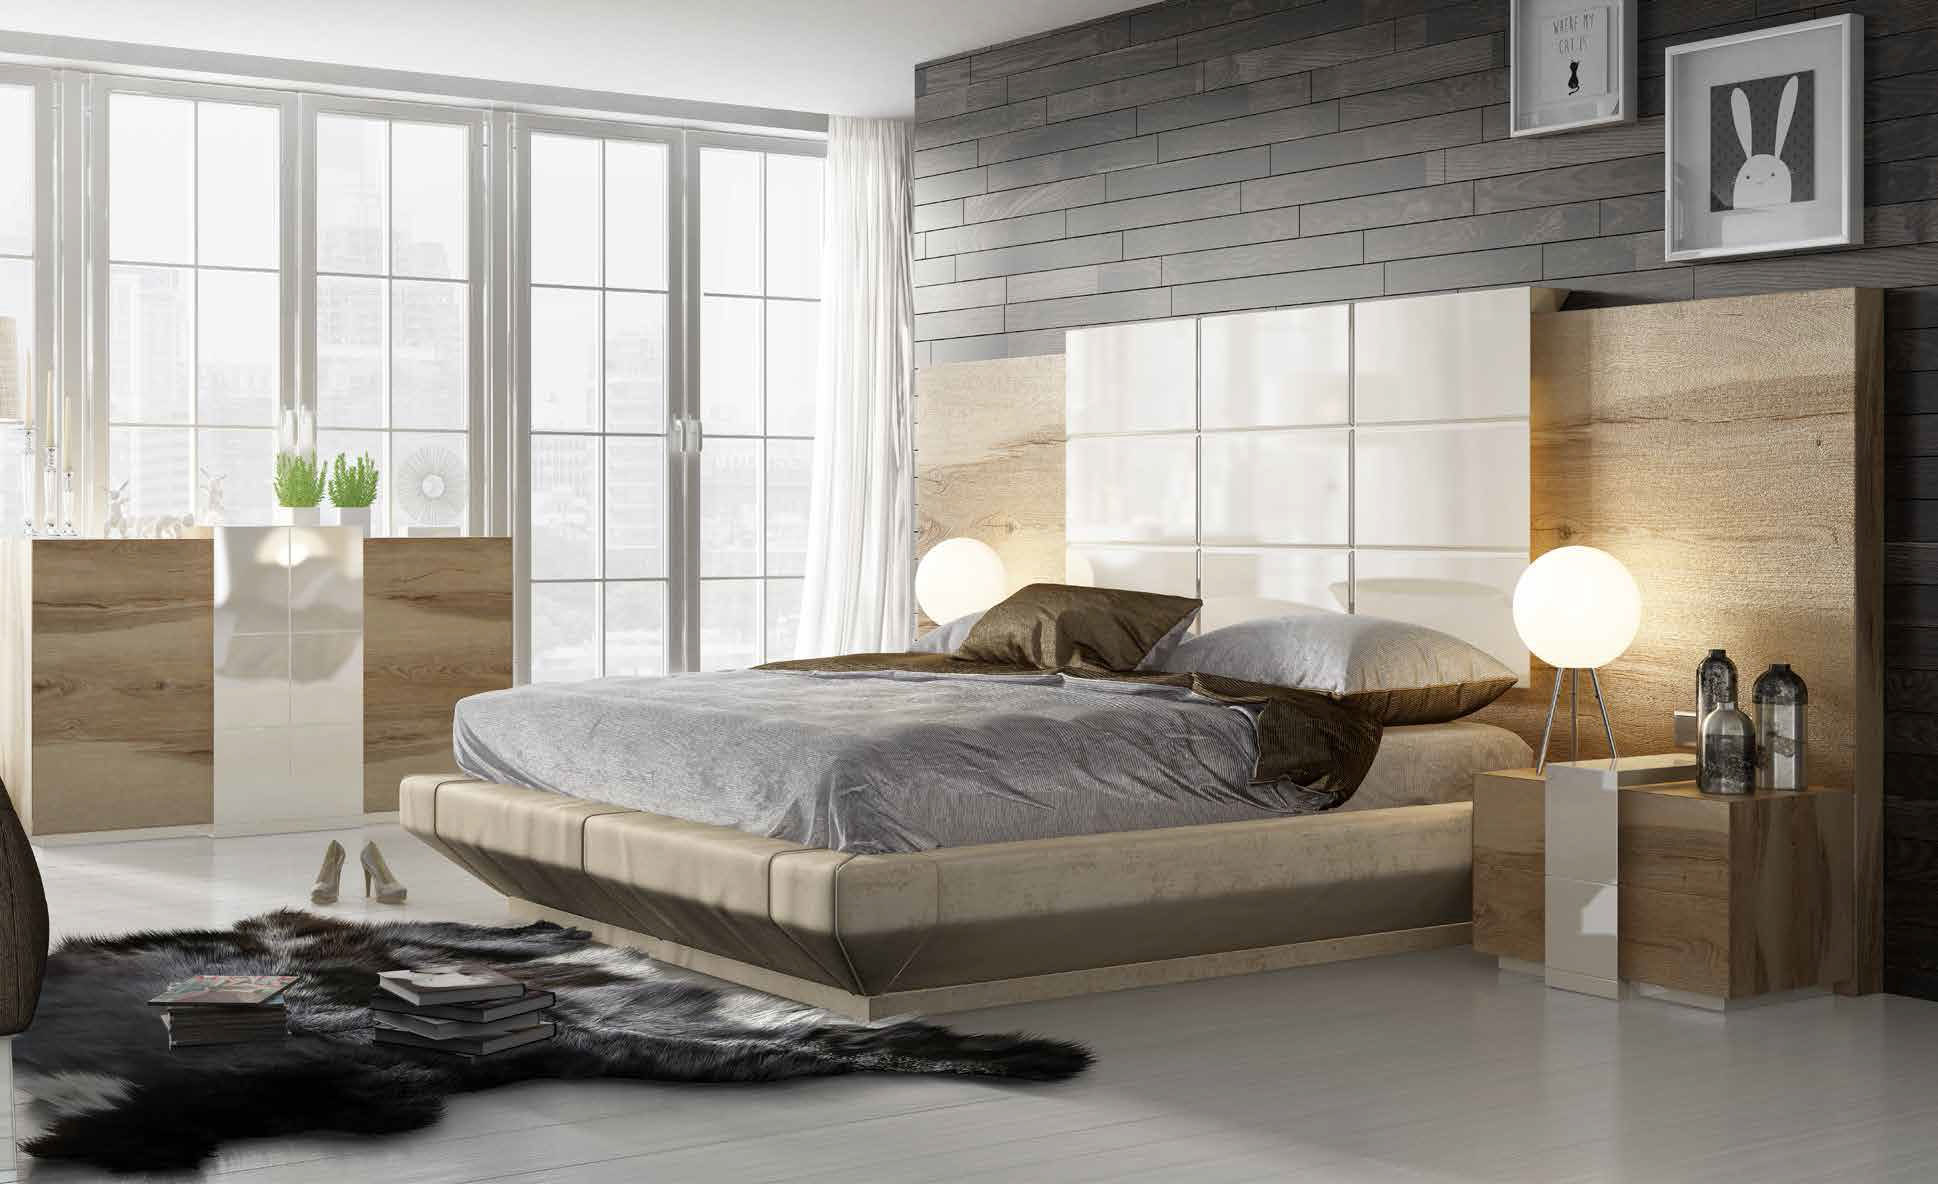 Brands Franco Furniture Avanty Bedrooms, Spain DOR 04